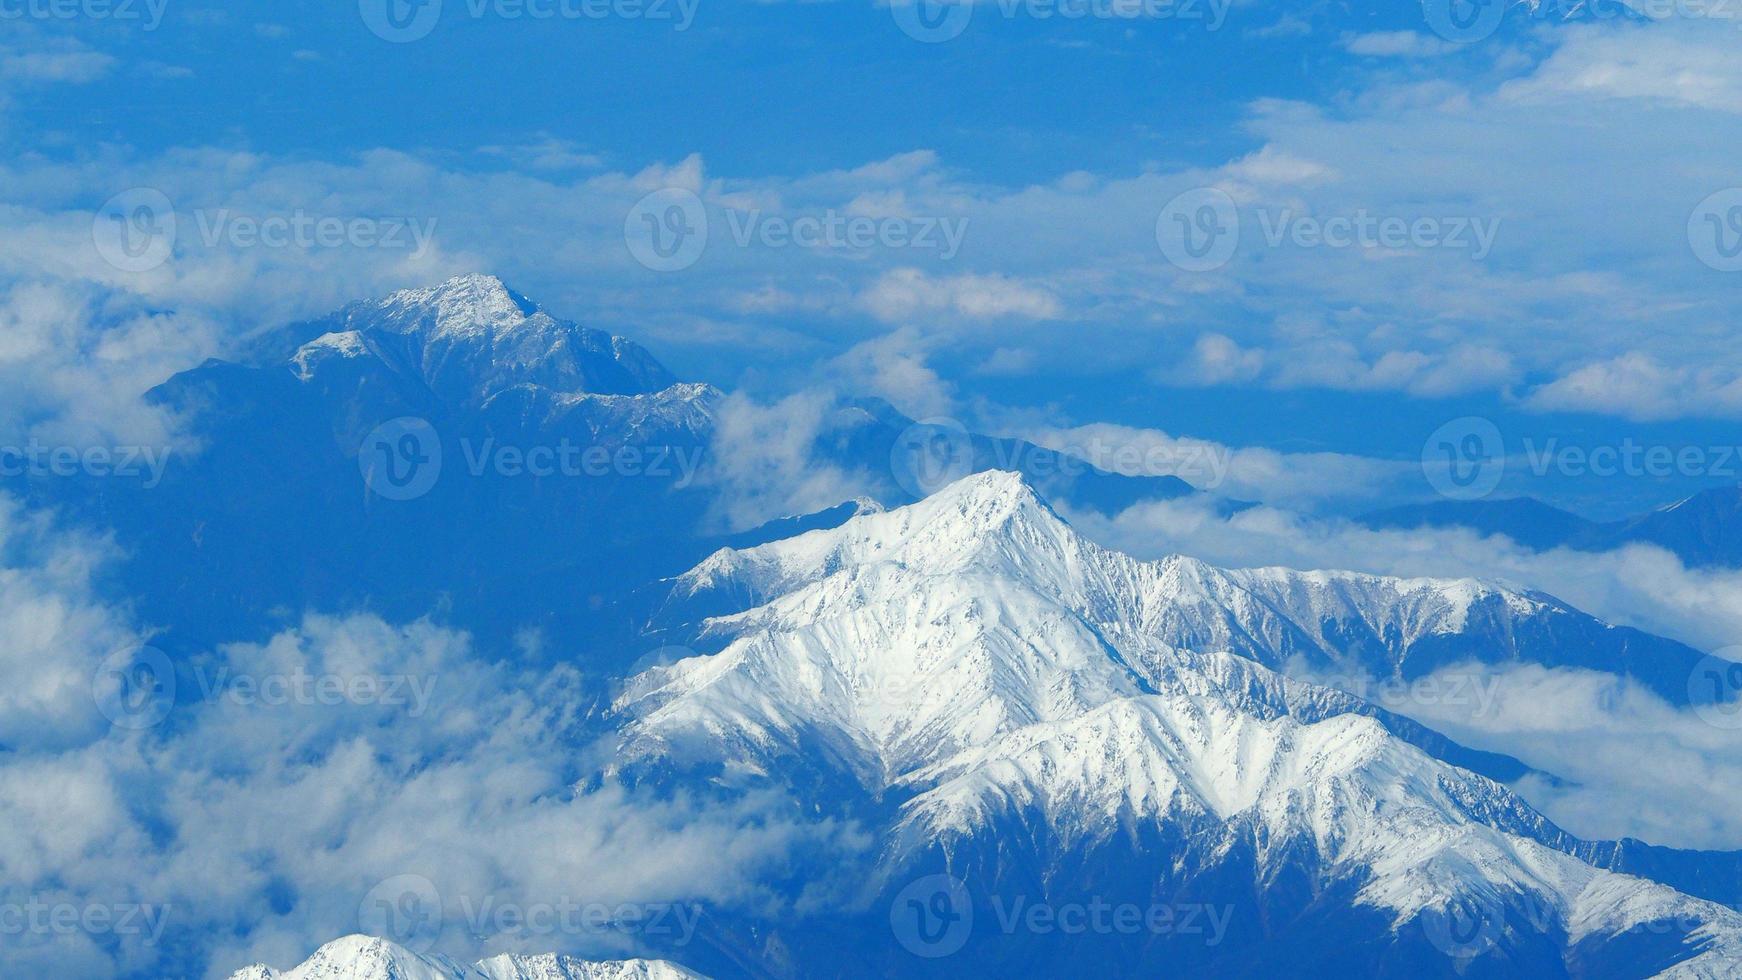 Draufsichtwinkelbilder von Schneehügeln rund um den Fuji-Berg foto